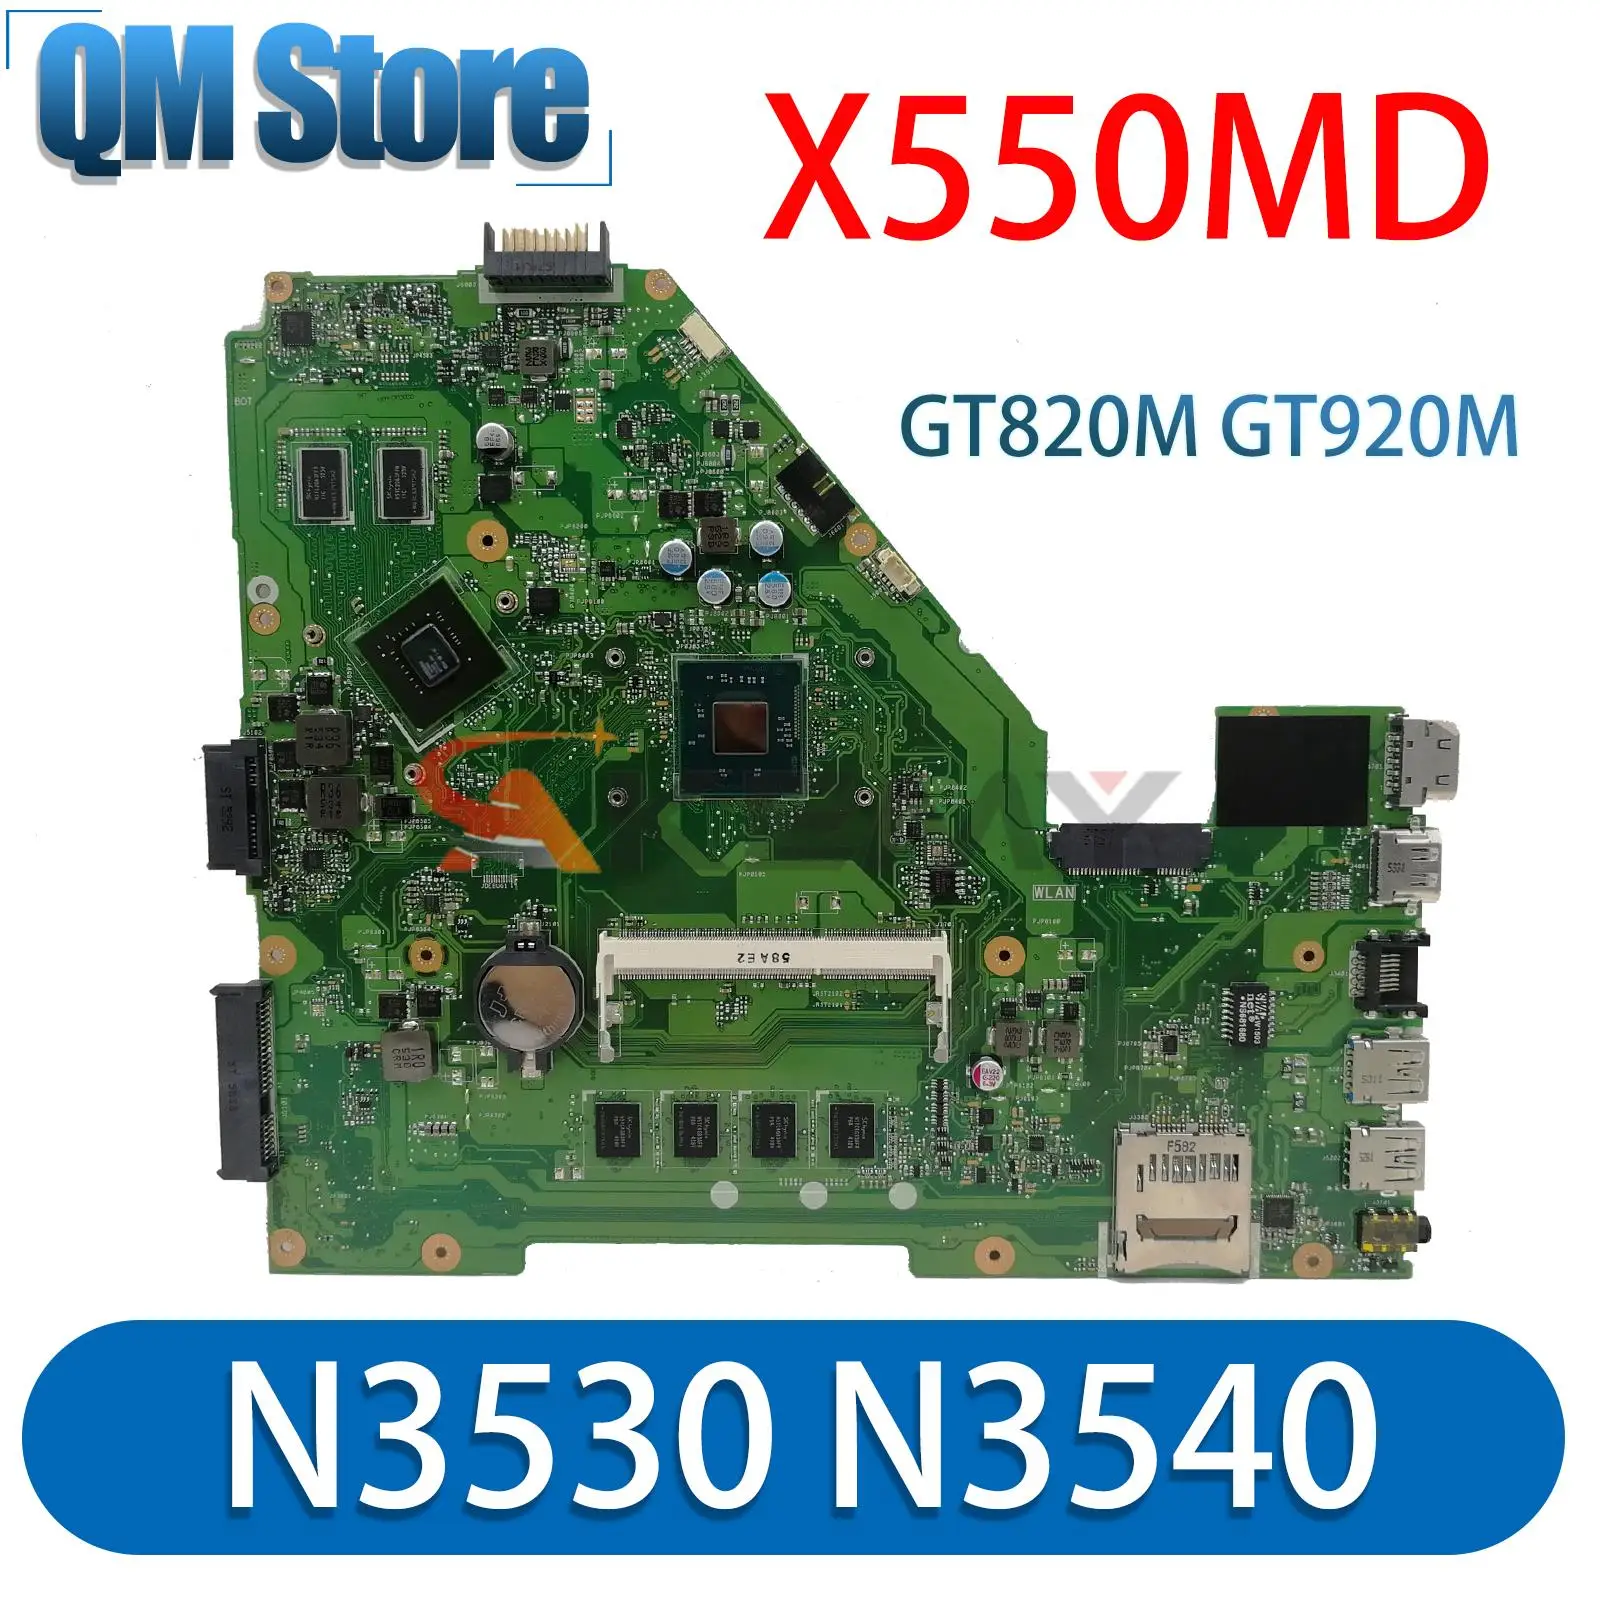 X550MD Материнская плата Для ноутбука ASUS X550MJ X552M X550M X552MD X552MJ Материнская плата ноутбука 4 ГБ/0G оперативной памяти N3530/N3540 GT820M GT920M